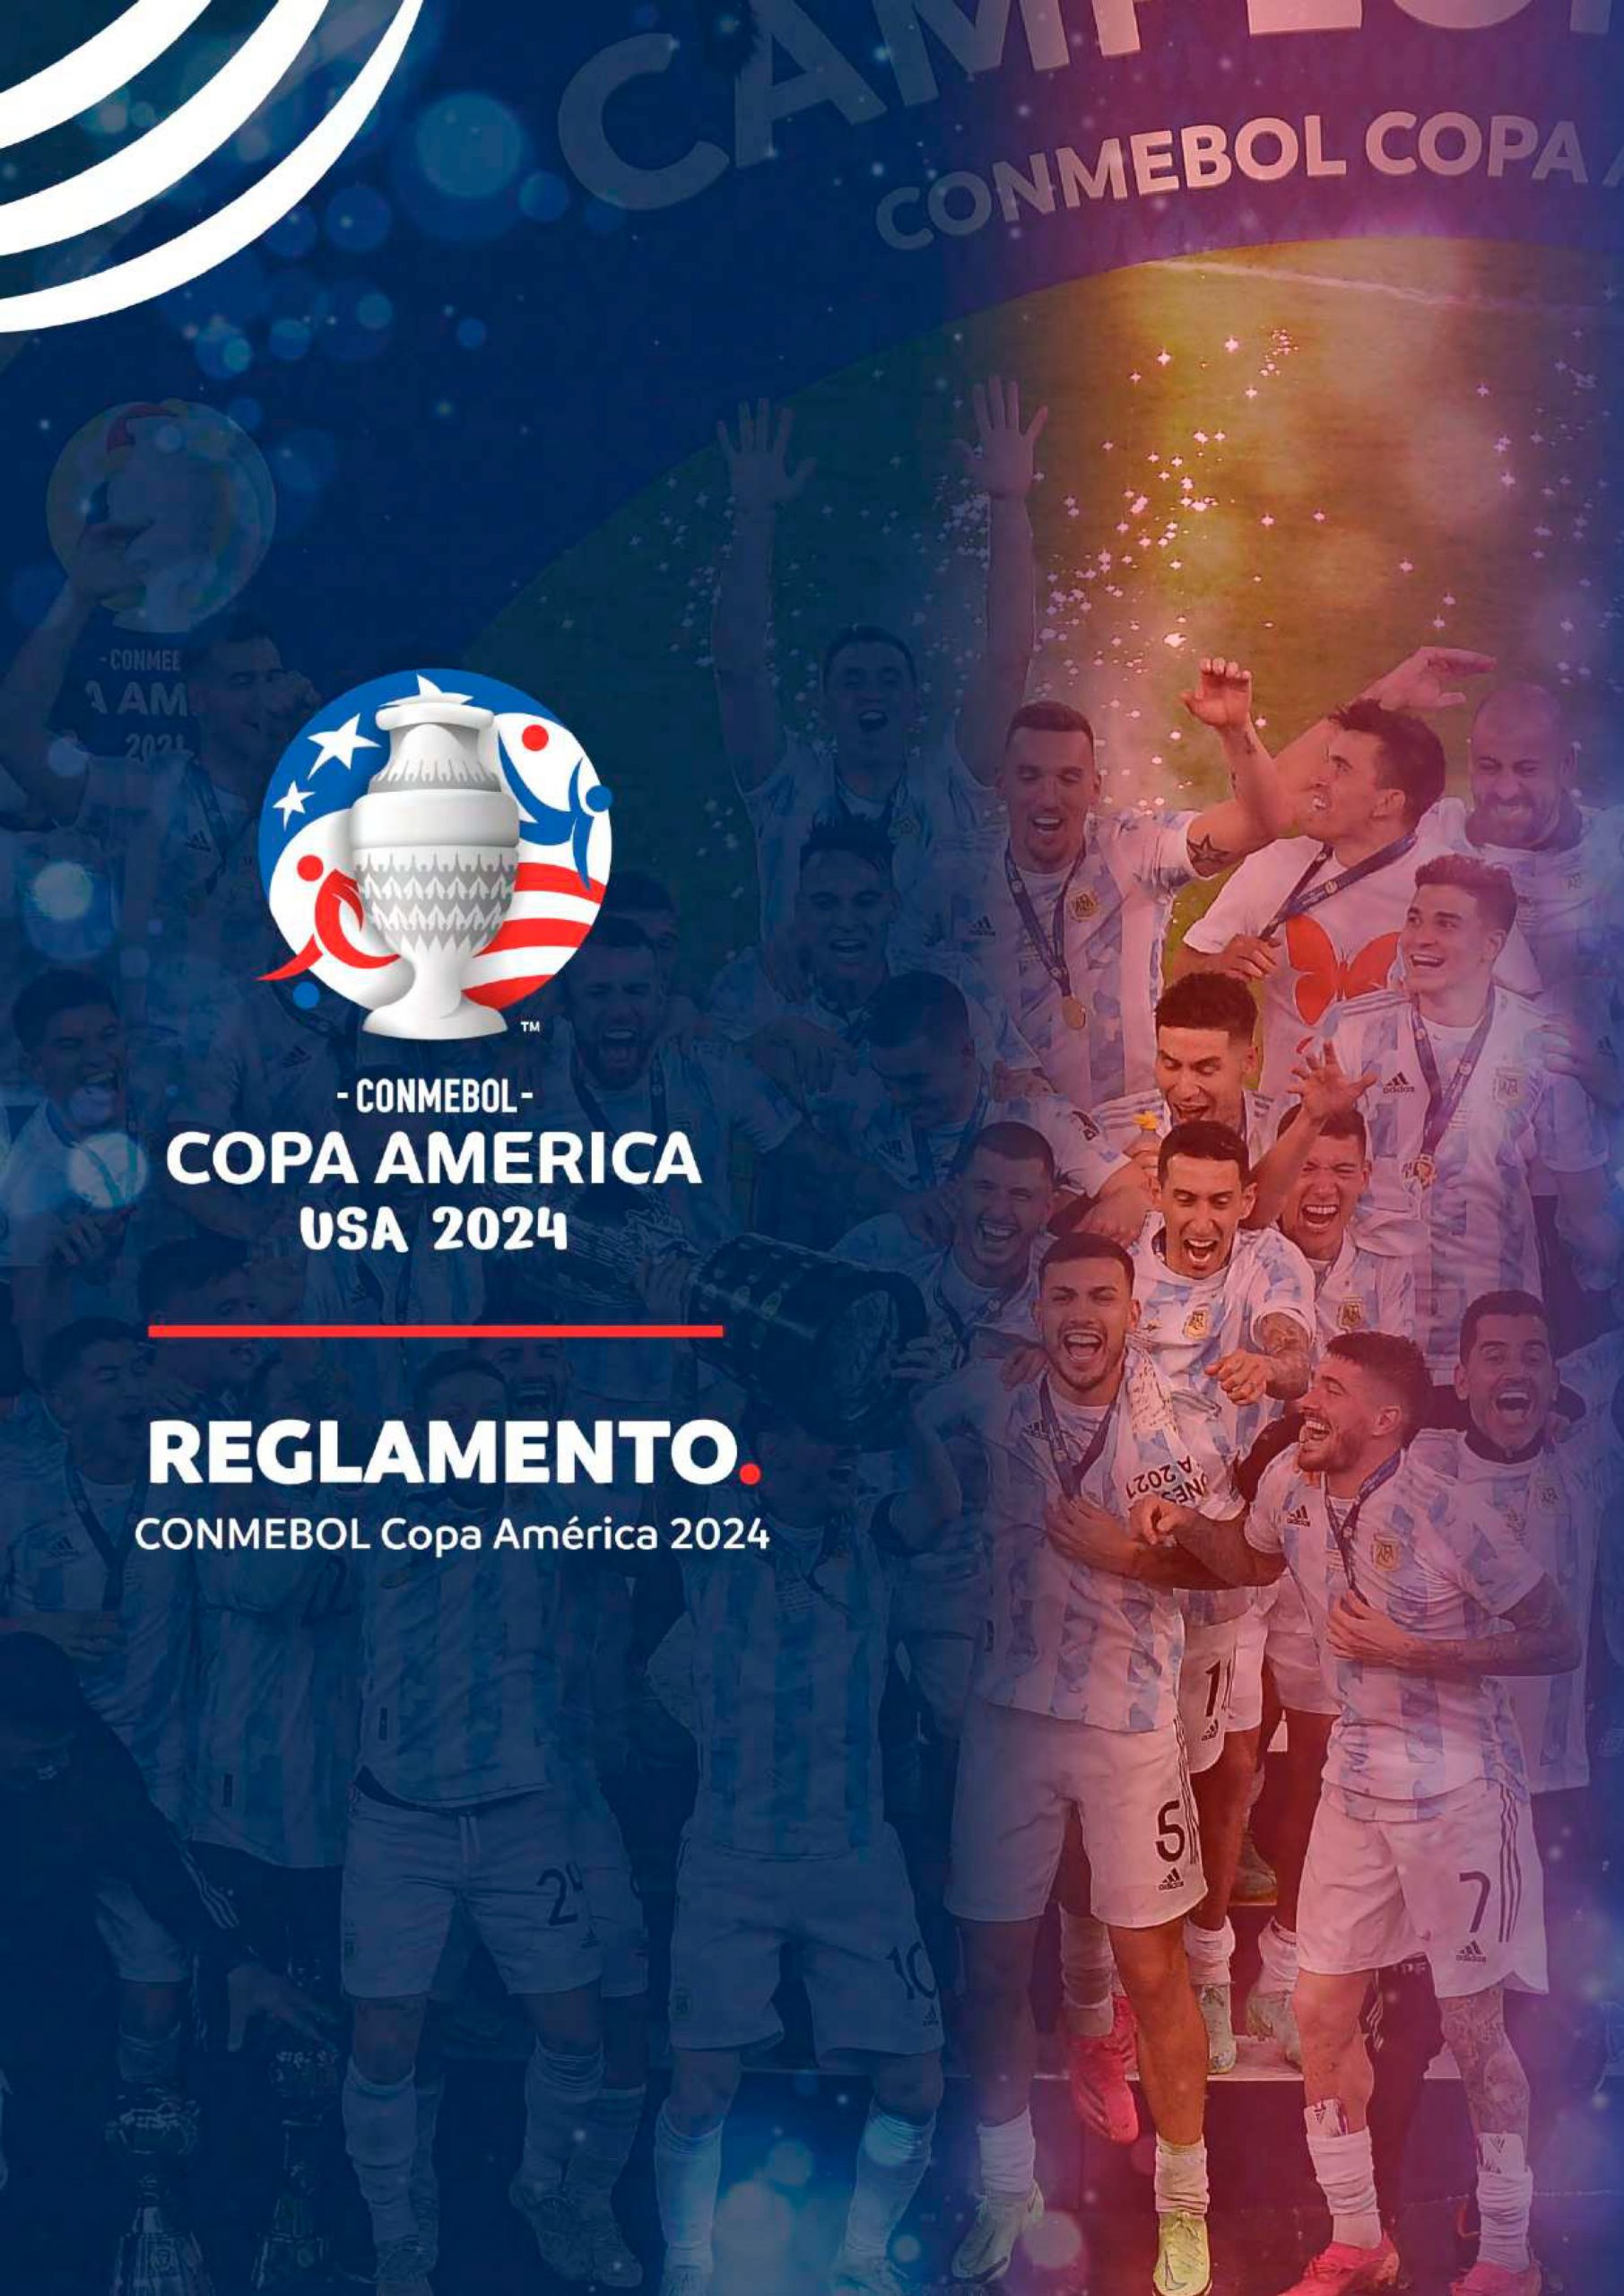 Reglamento CONMEBOL Copa América 2024 CONMEBOL